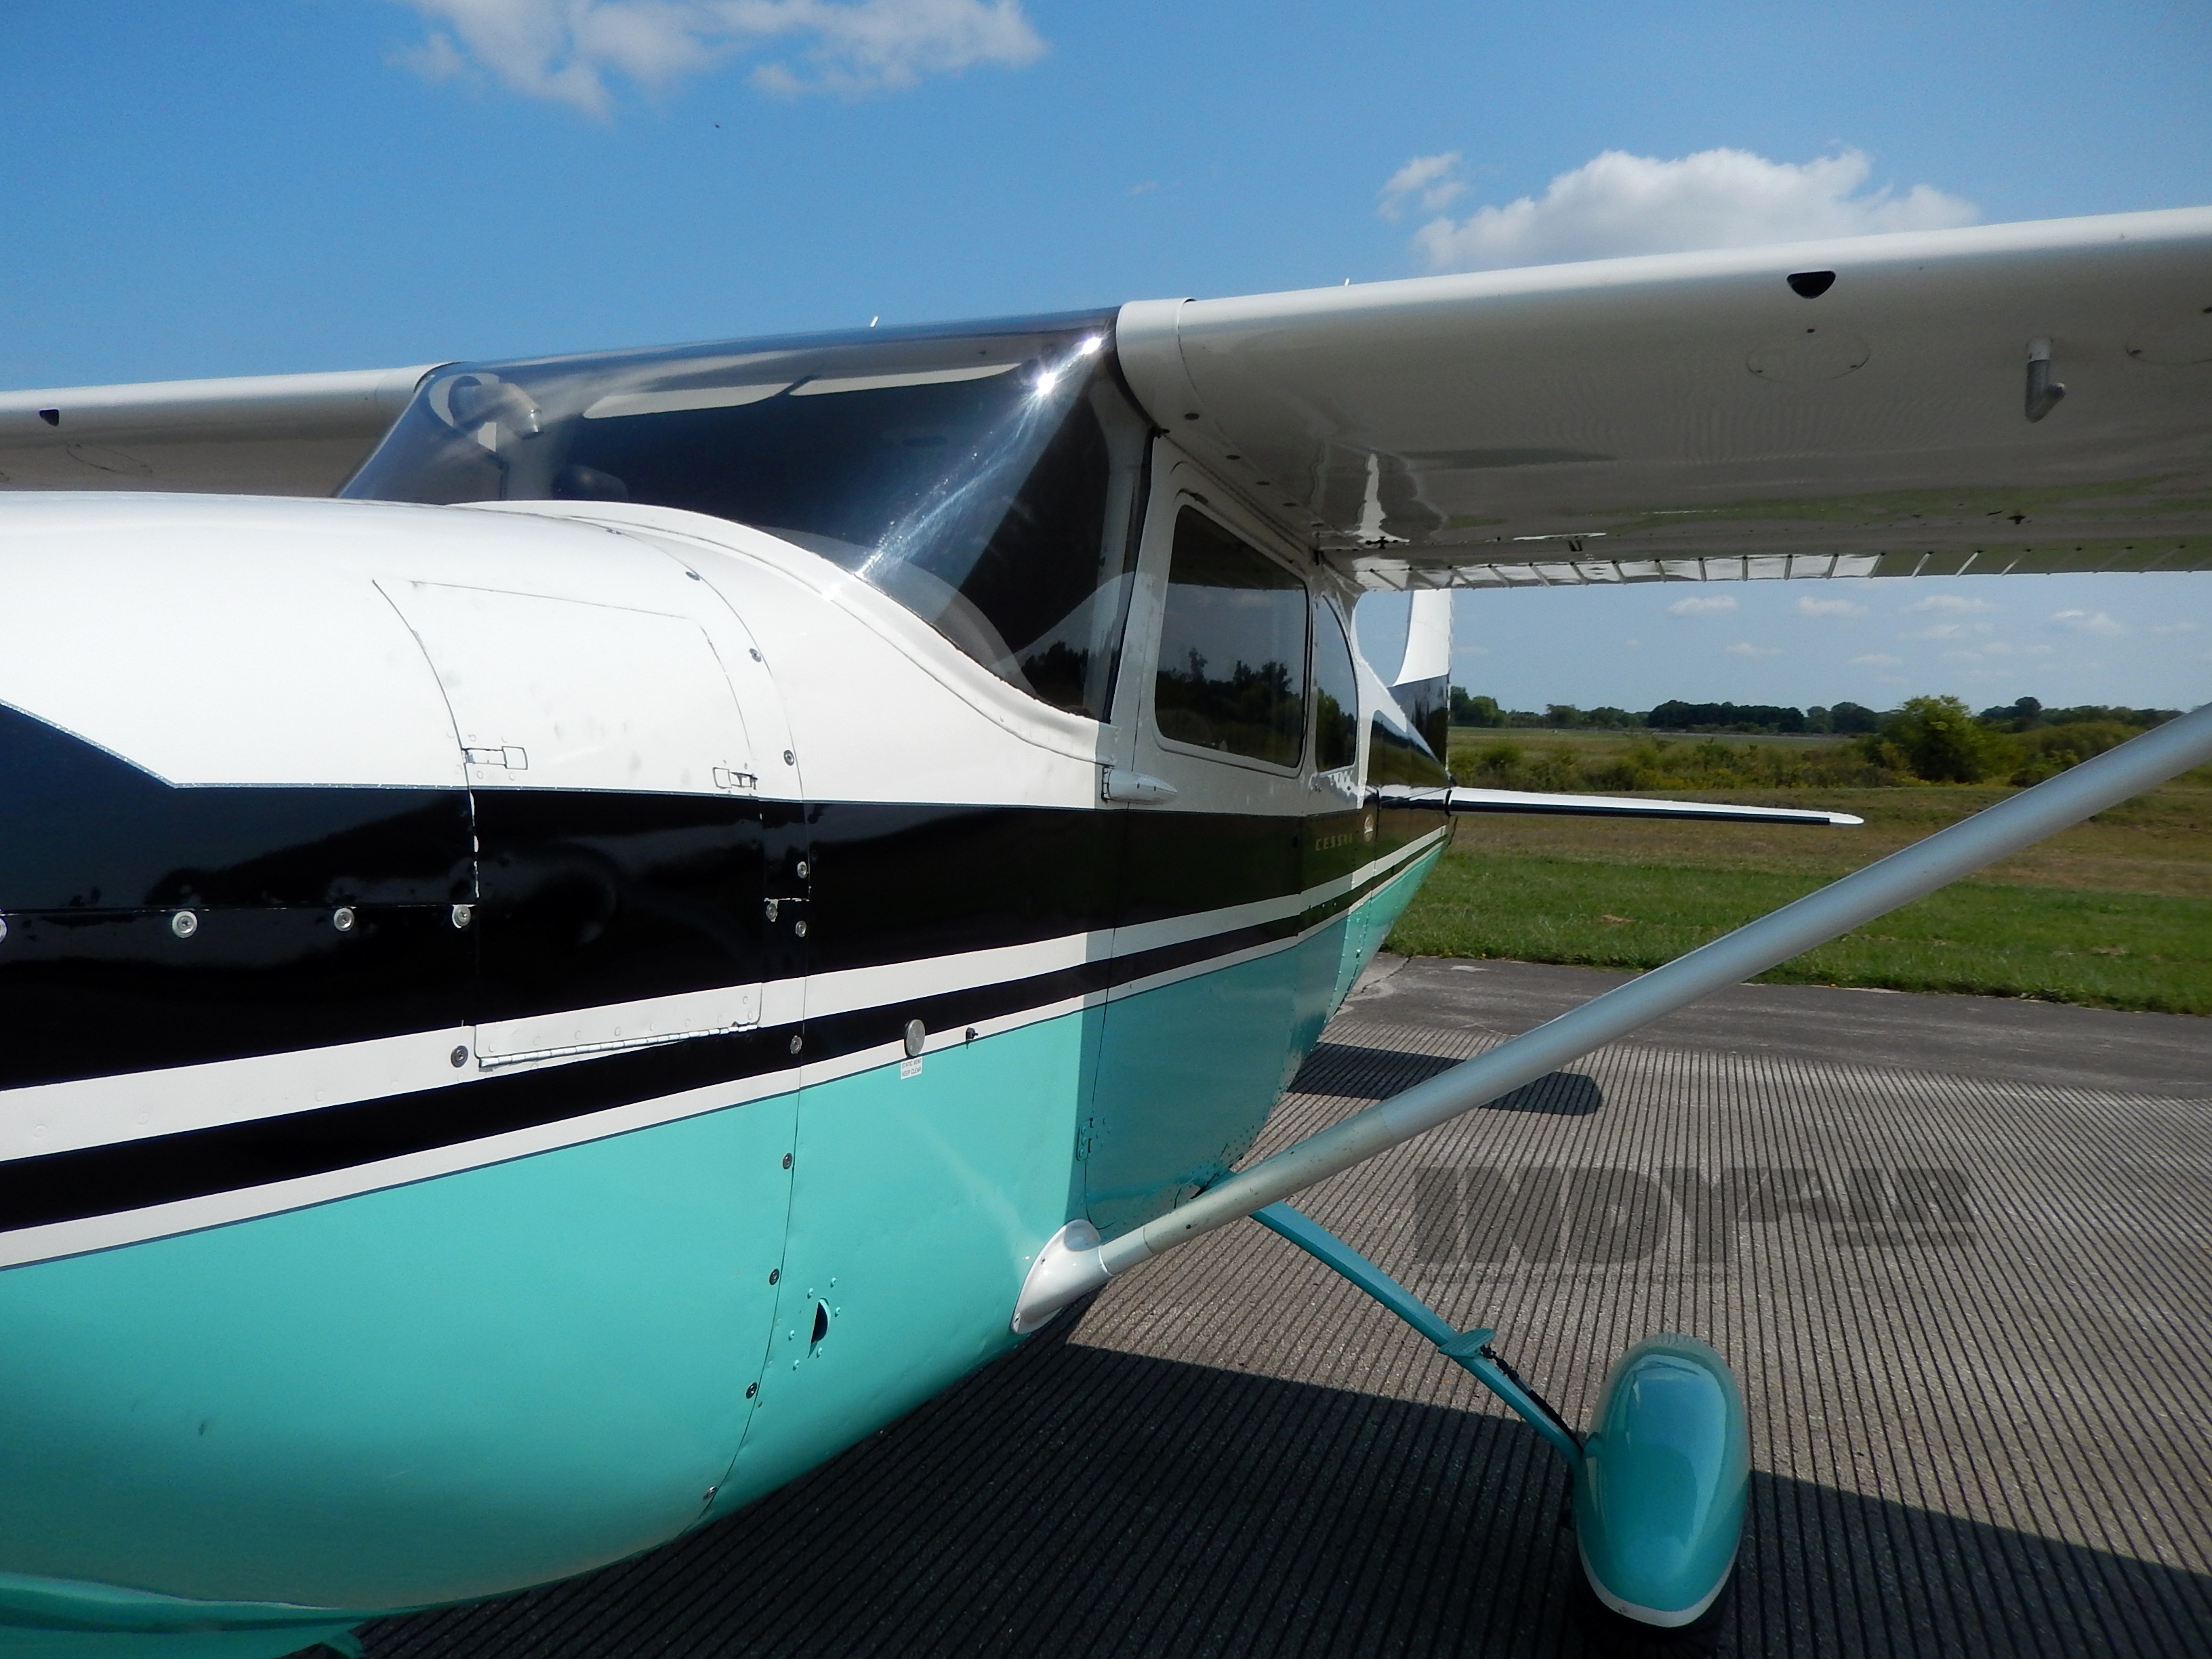 1958 Cessna 182A - N4716D